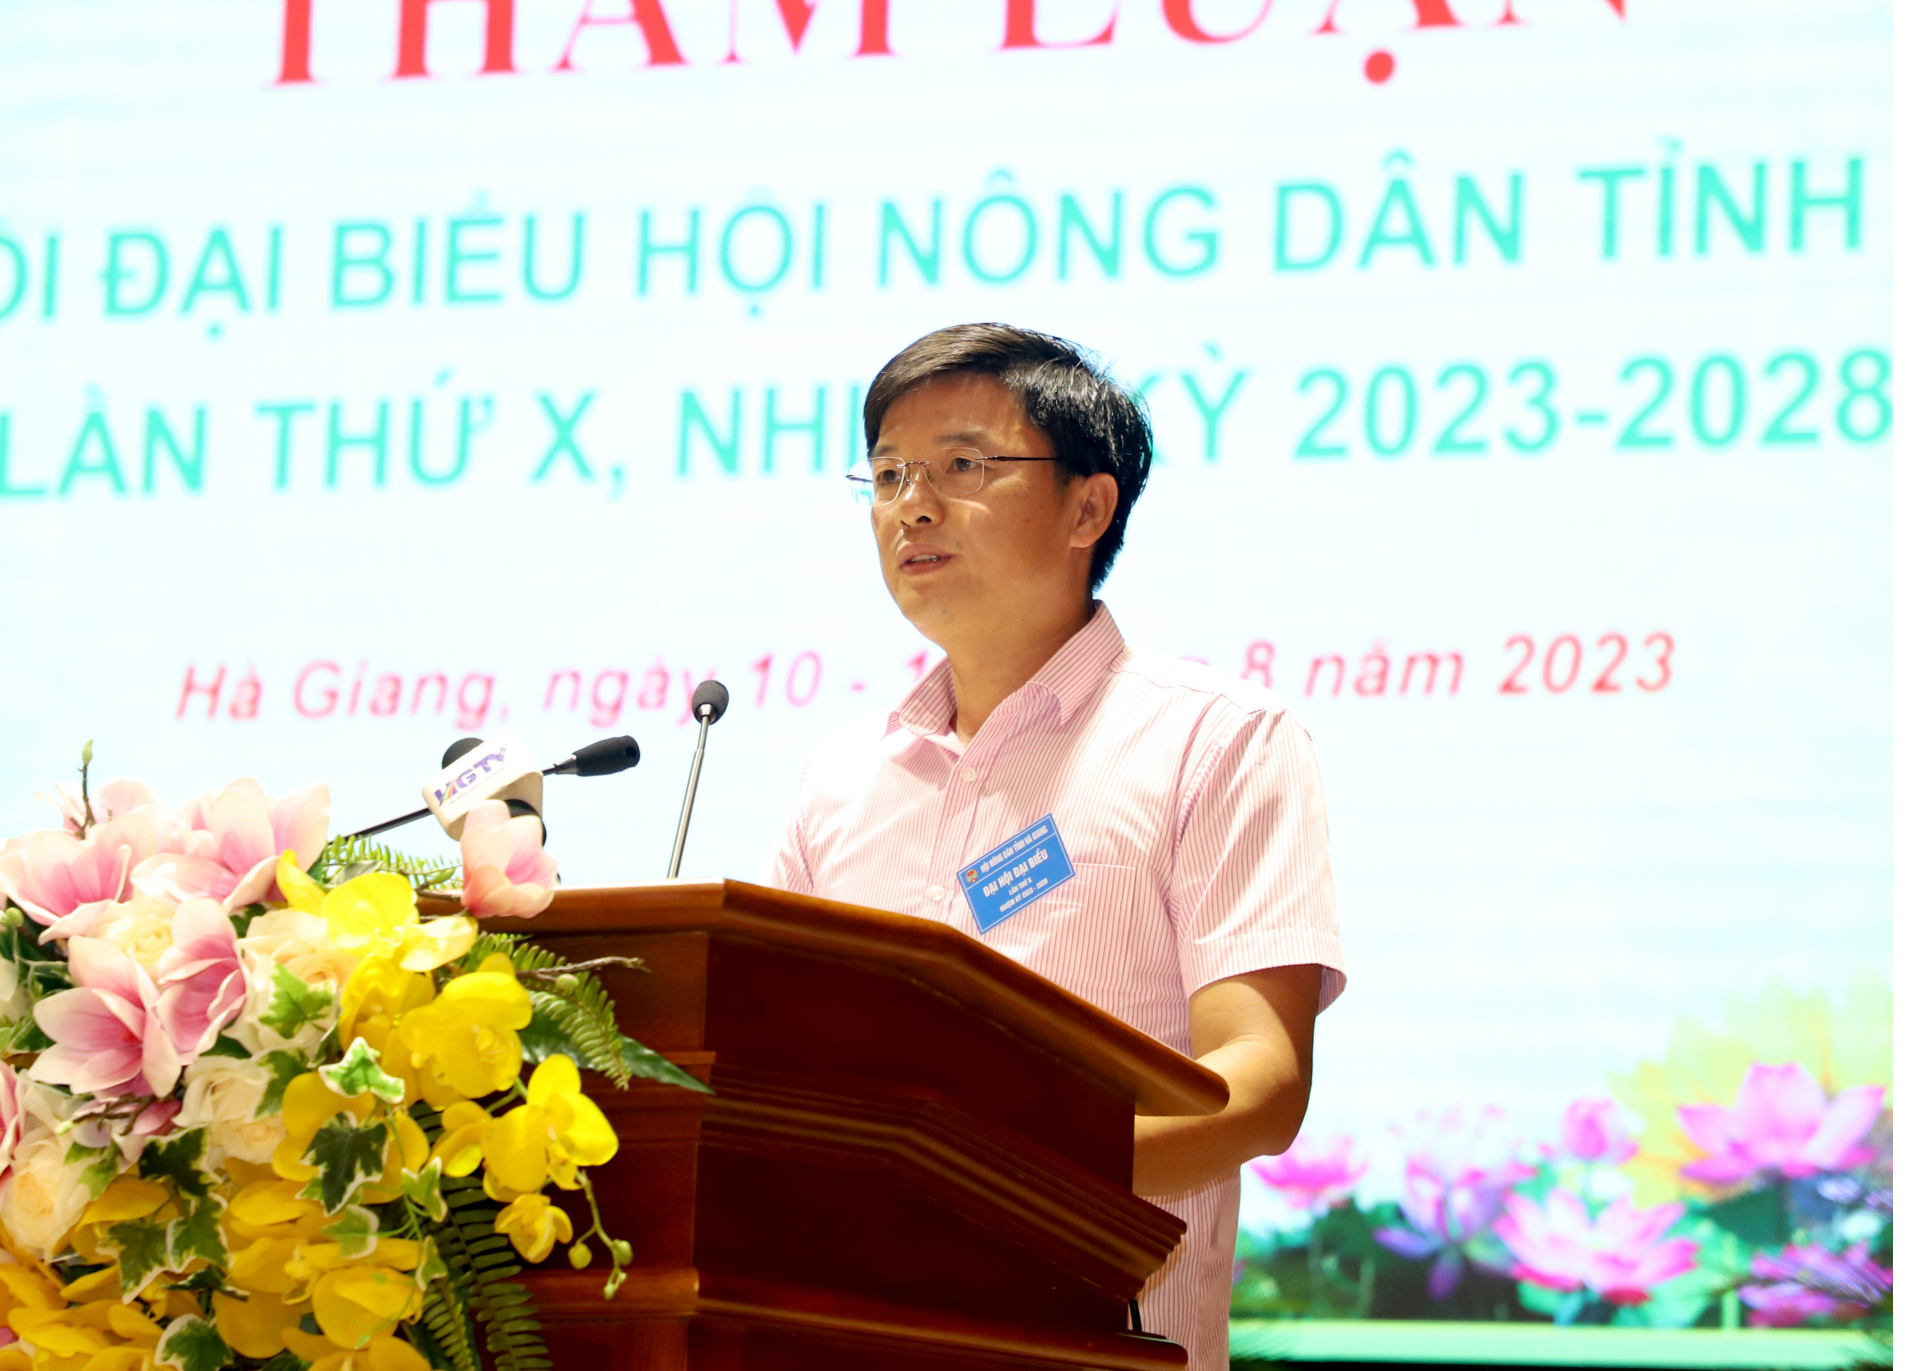 Đại biểu Đỗ Anh Tuấn, Phó Giám đốc Ngân hàng Chính sách xã hội tỉnh tham luận tại đại hội.